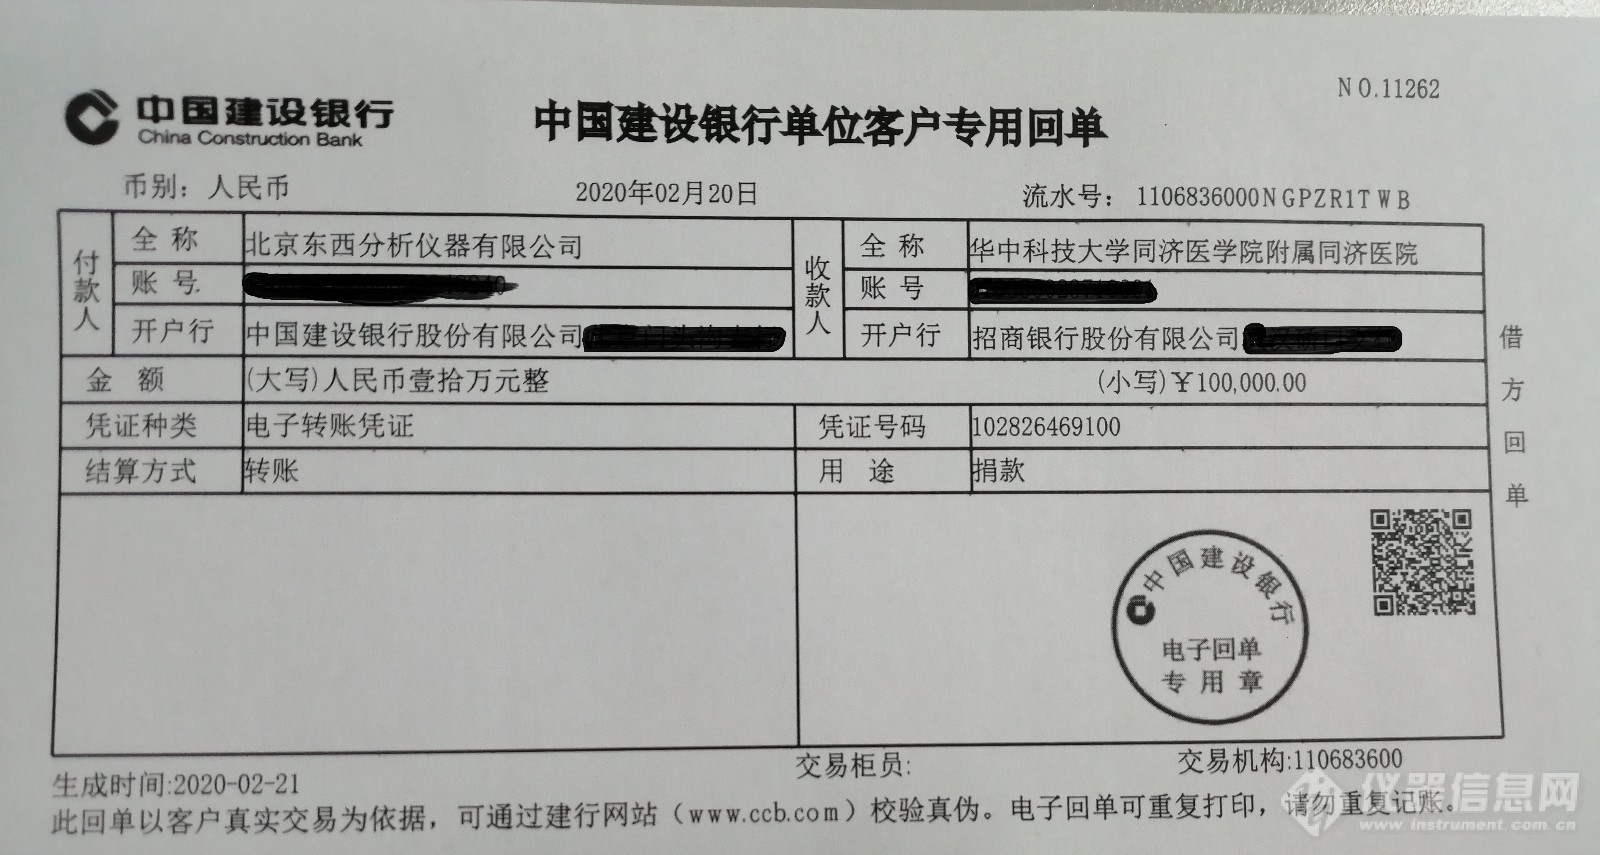 公司员工自发给武汉捐款汇款单-20200221.jpg